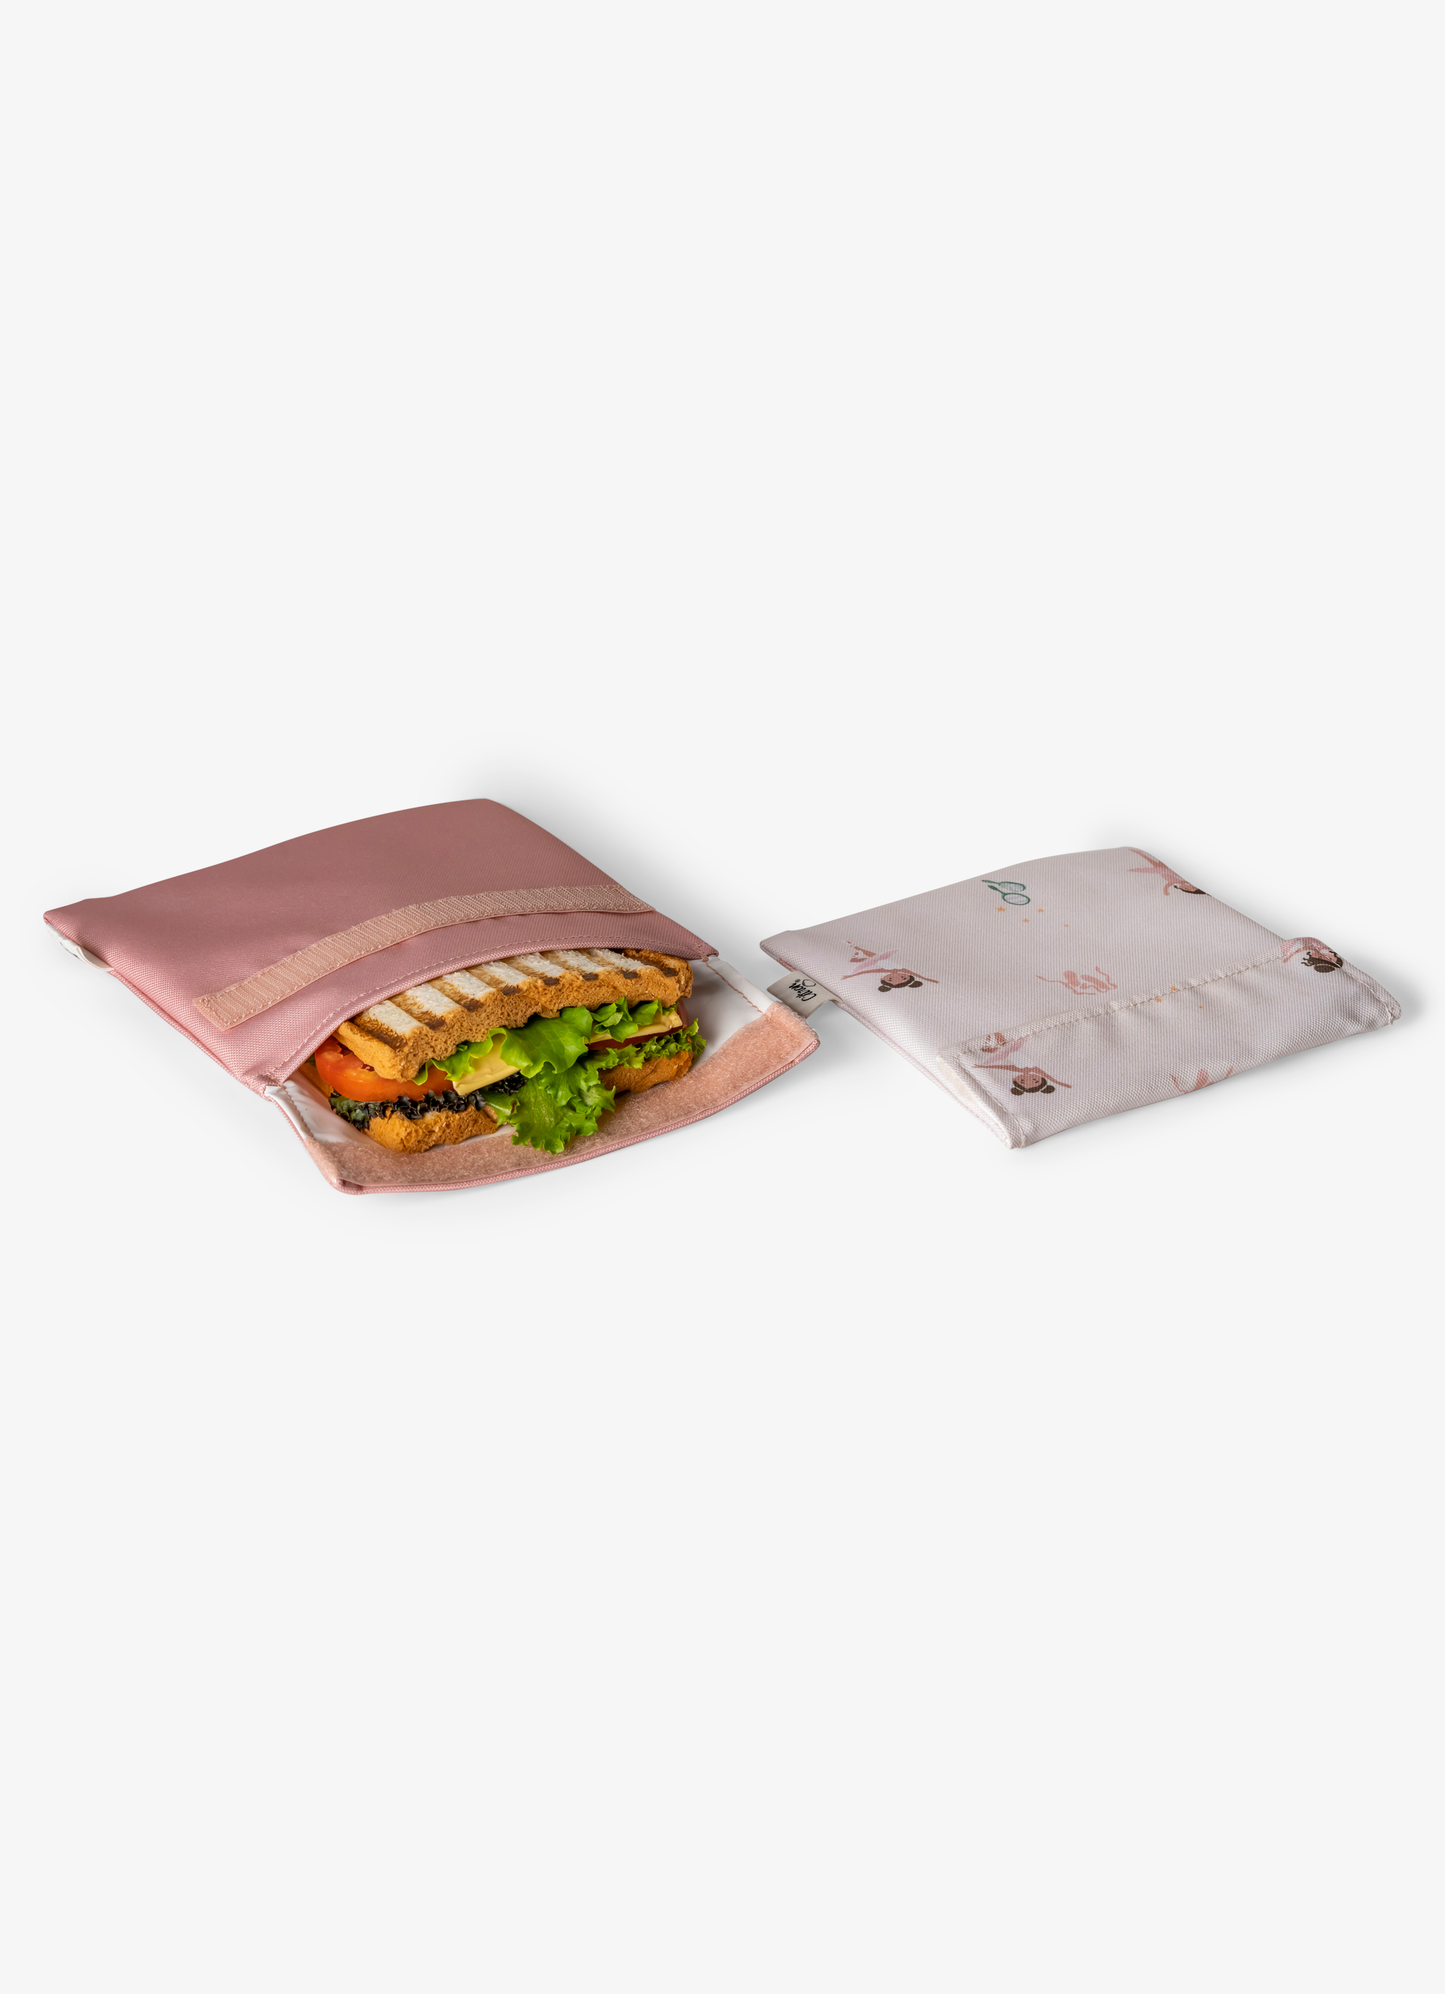 كيس ساندوش قابل لأعادة الأستخدام - طقم من قطعتين - بالرينا / وردي